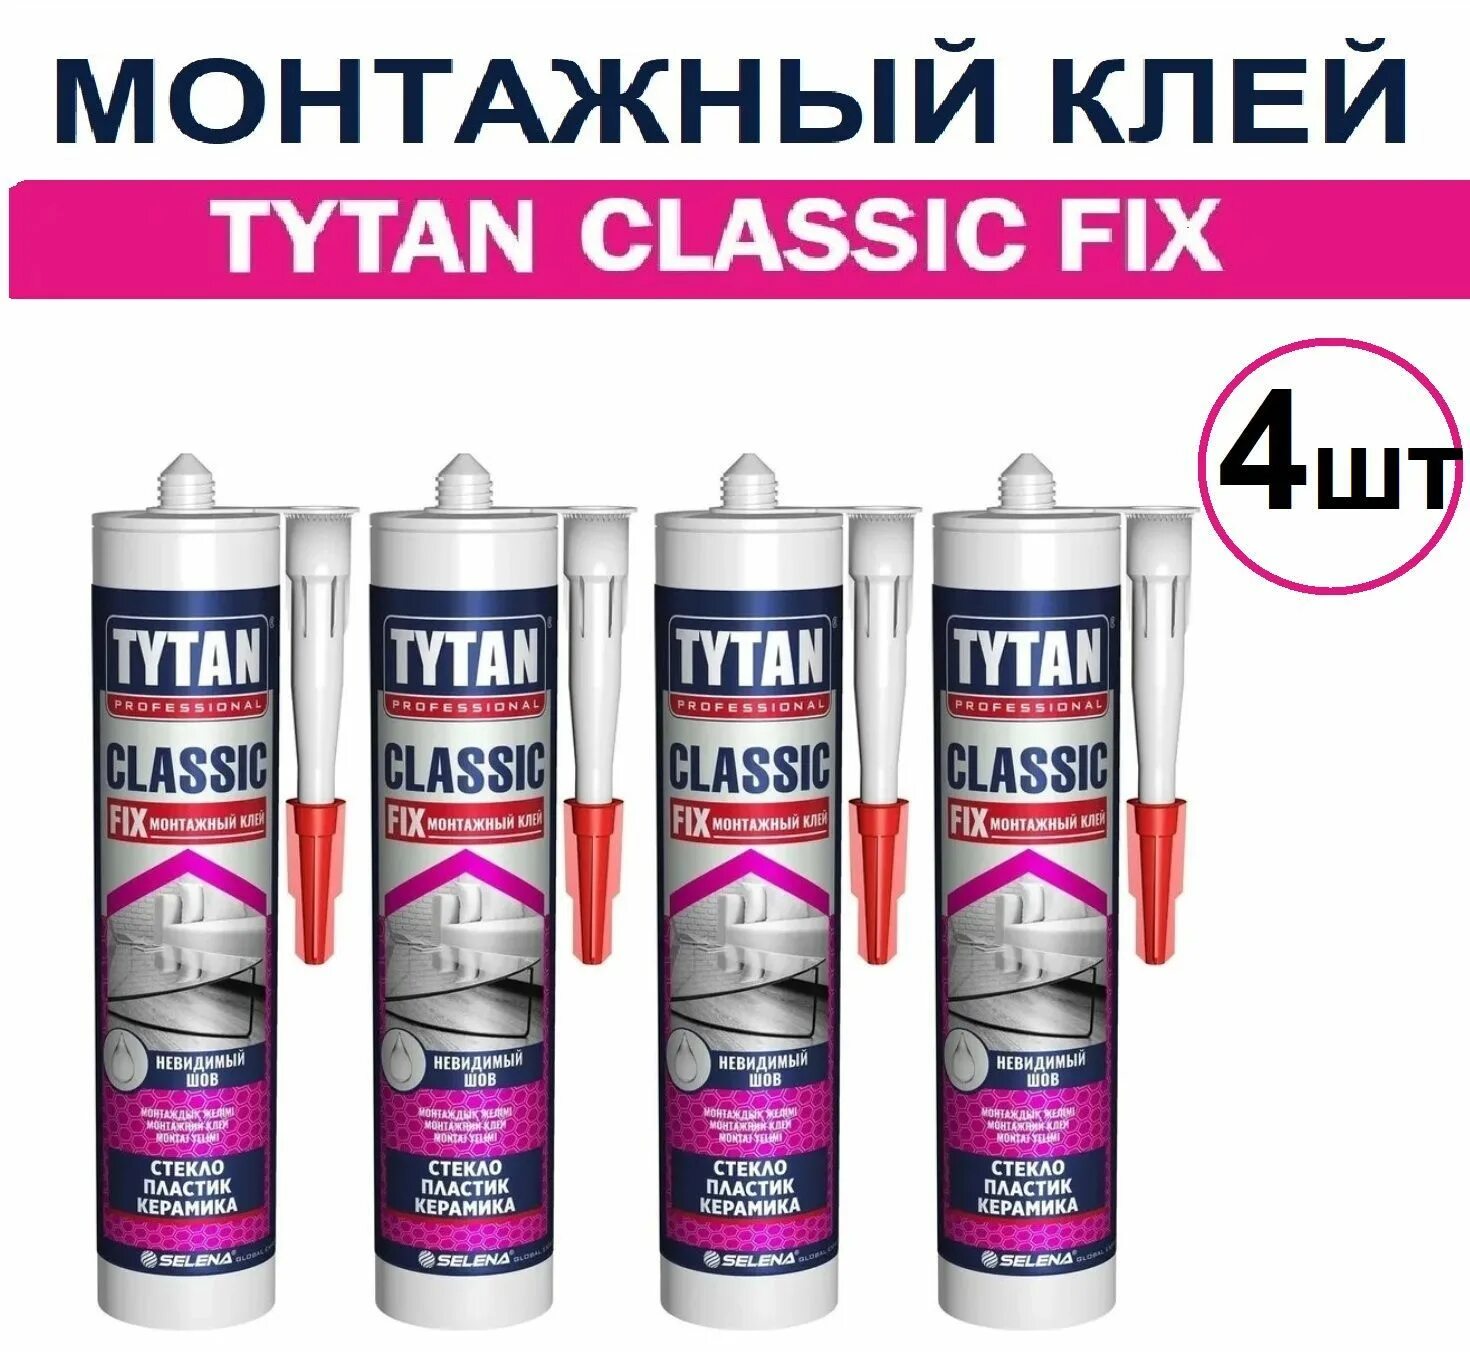 Клей монтажный Tytan Classic Fix 310 мл. Tytan professional Classic Fix монтажный клей. Tytan professional клей монтажный Classic Fix, прозрачный, 310 мл. Tytan Classic Fix клей монтажный (бесцветный) 310мл. Tytan classic fix 310 мл